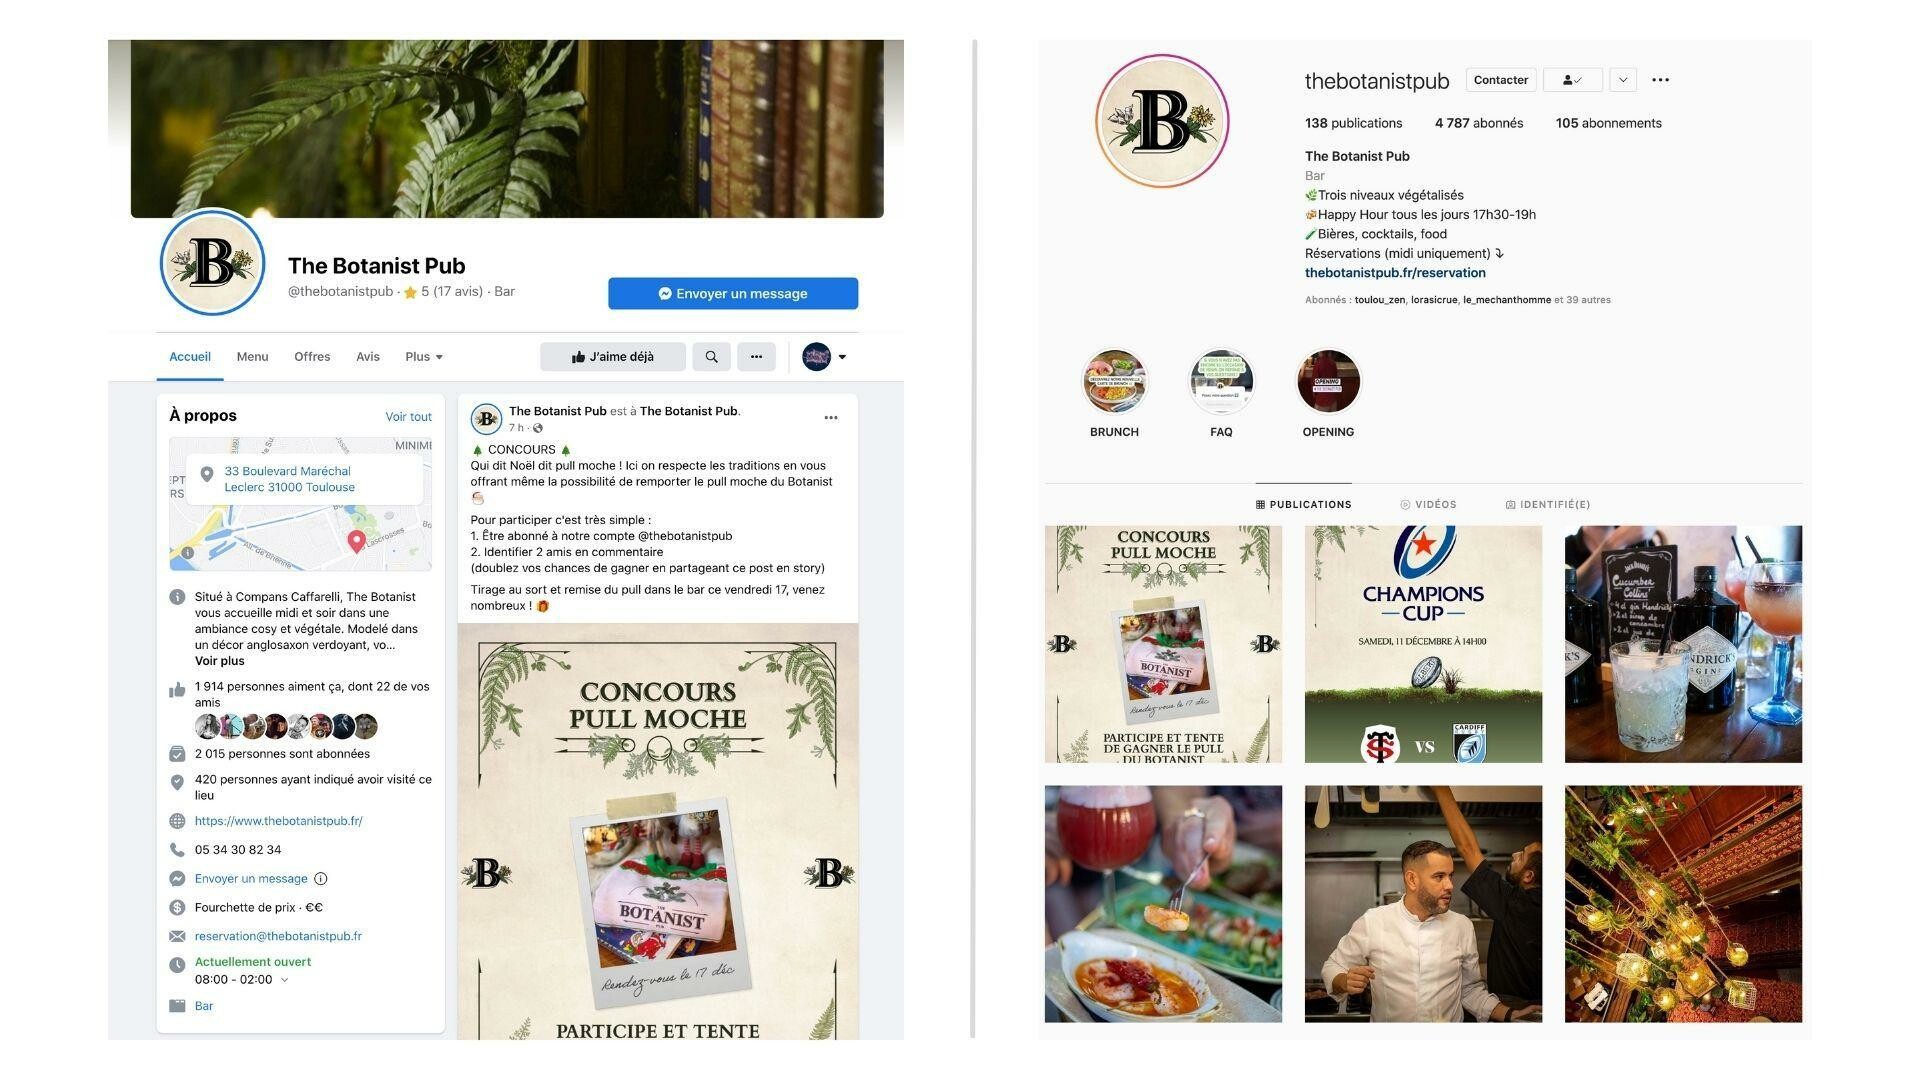 network reach visibility the botanist pub gestion des reseaux sociaux facebook instagram